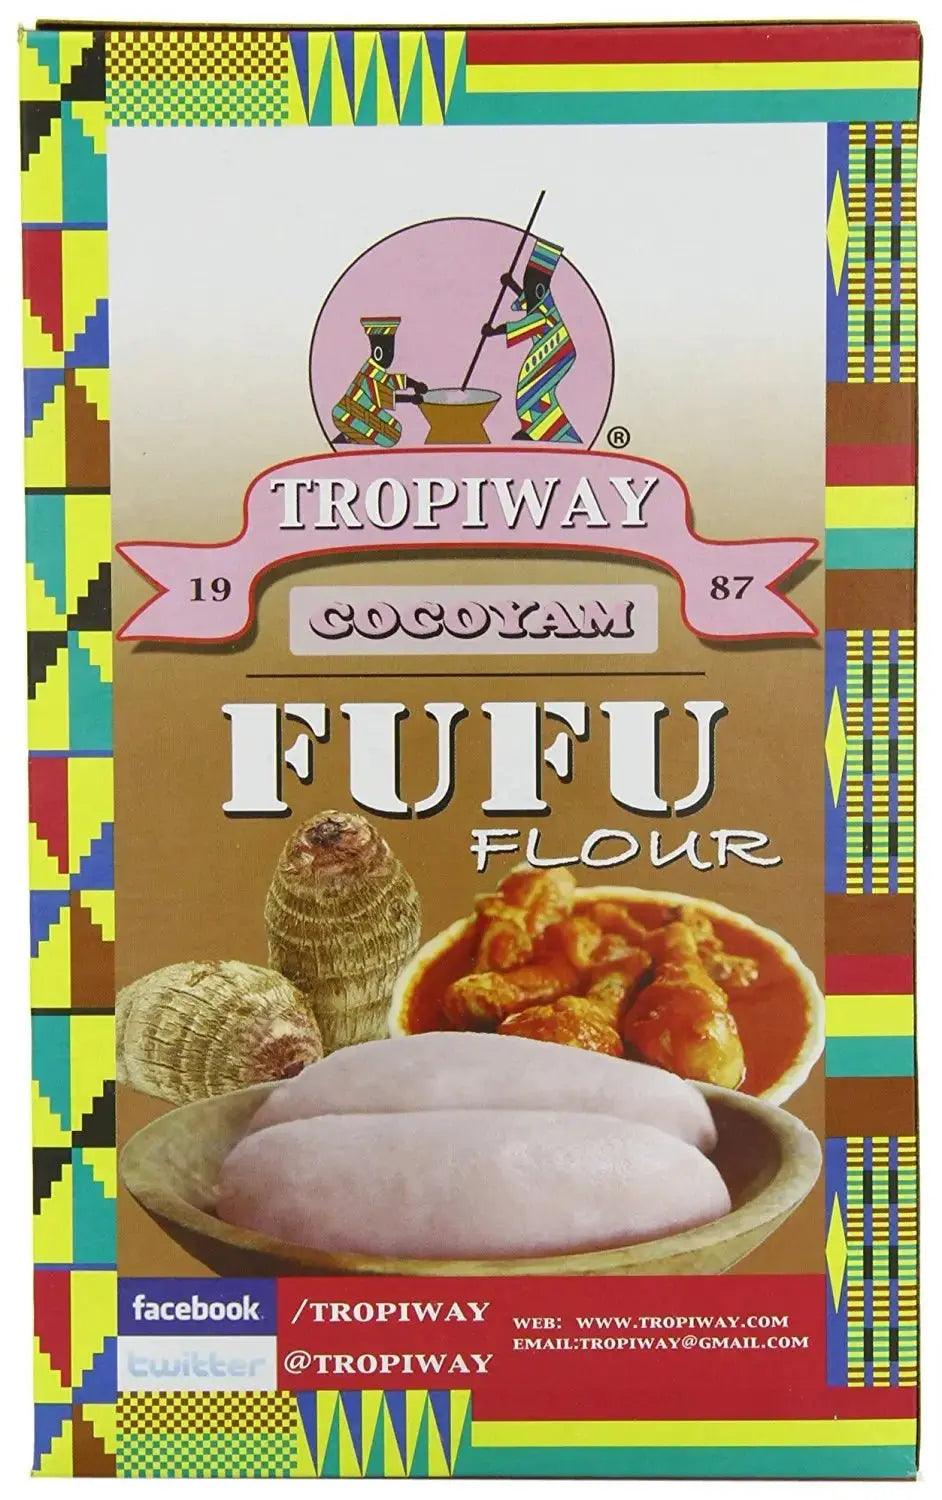 Tropiway Cocoyam Fufu Flour 680g desiccated cocoyam - Honesty Sales U.K